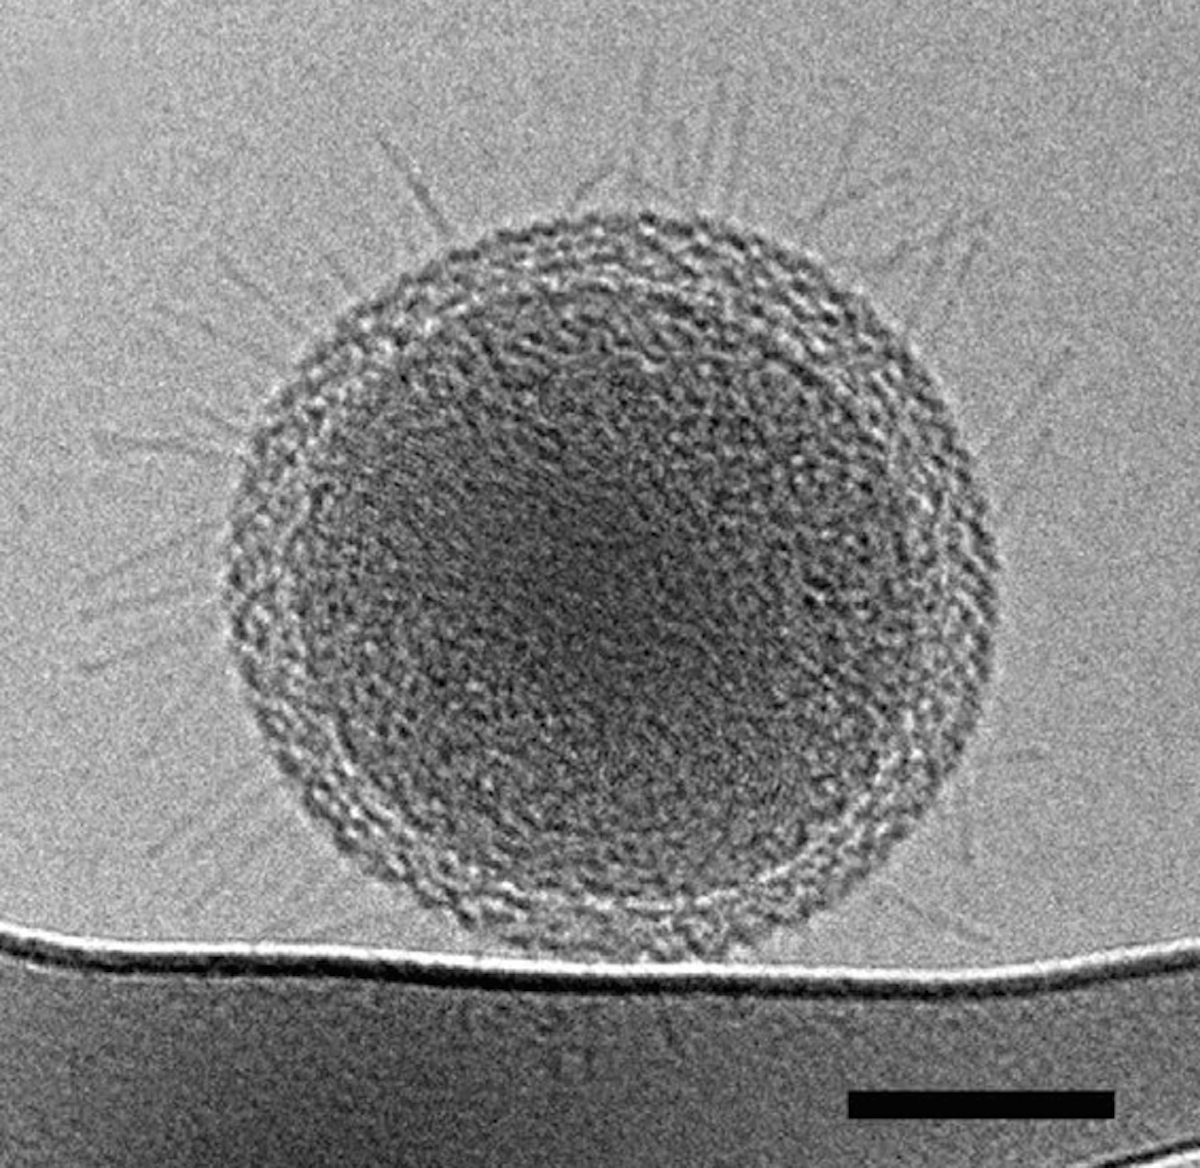 Самый маленький микроб в мире под микроскопом. Самая маленькая бактерия в мире. Рибосомы в микроскопе. Самые маленькие микробы в микроскоп.